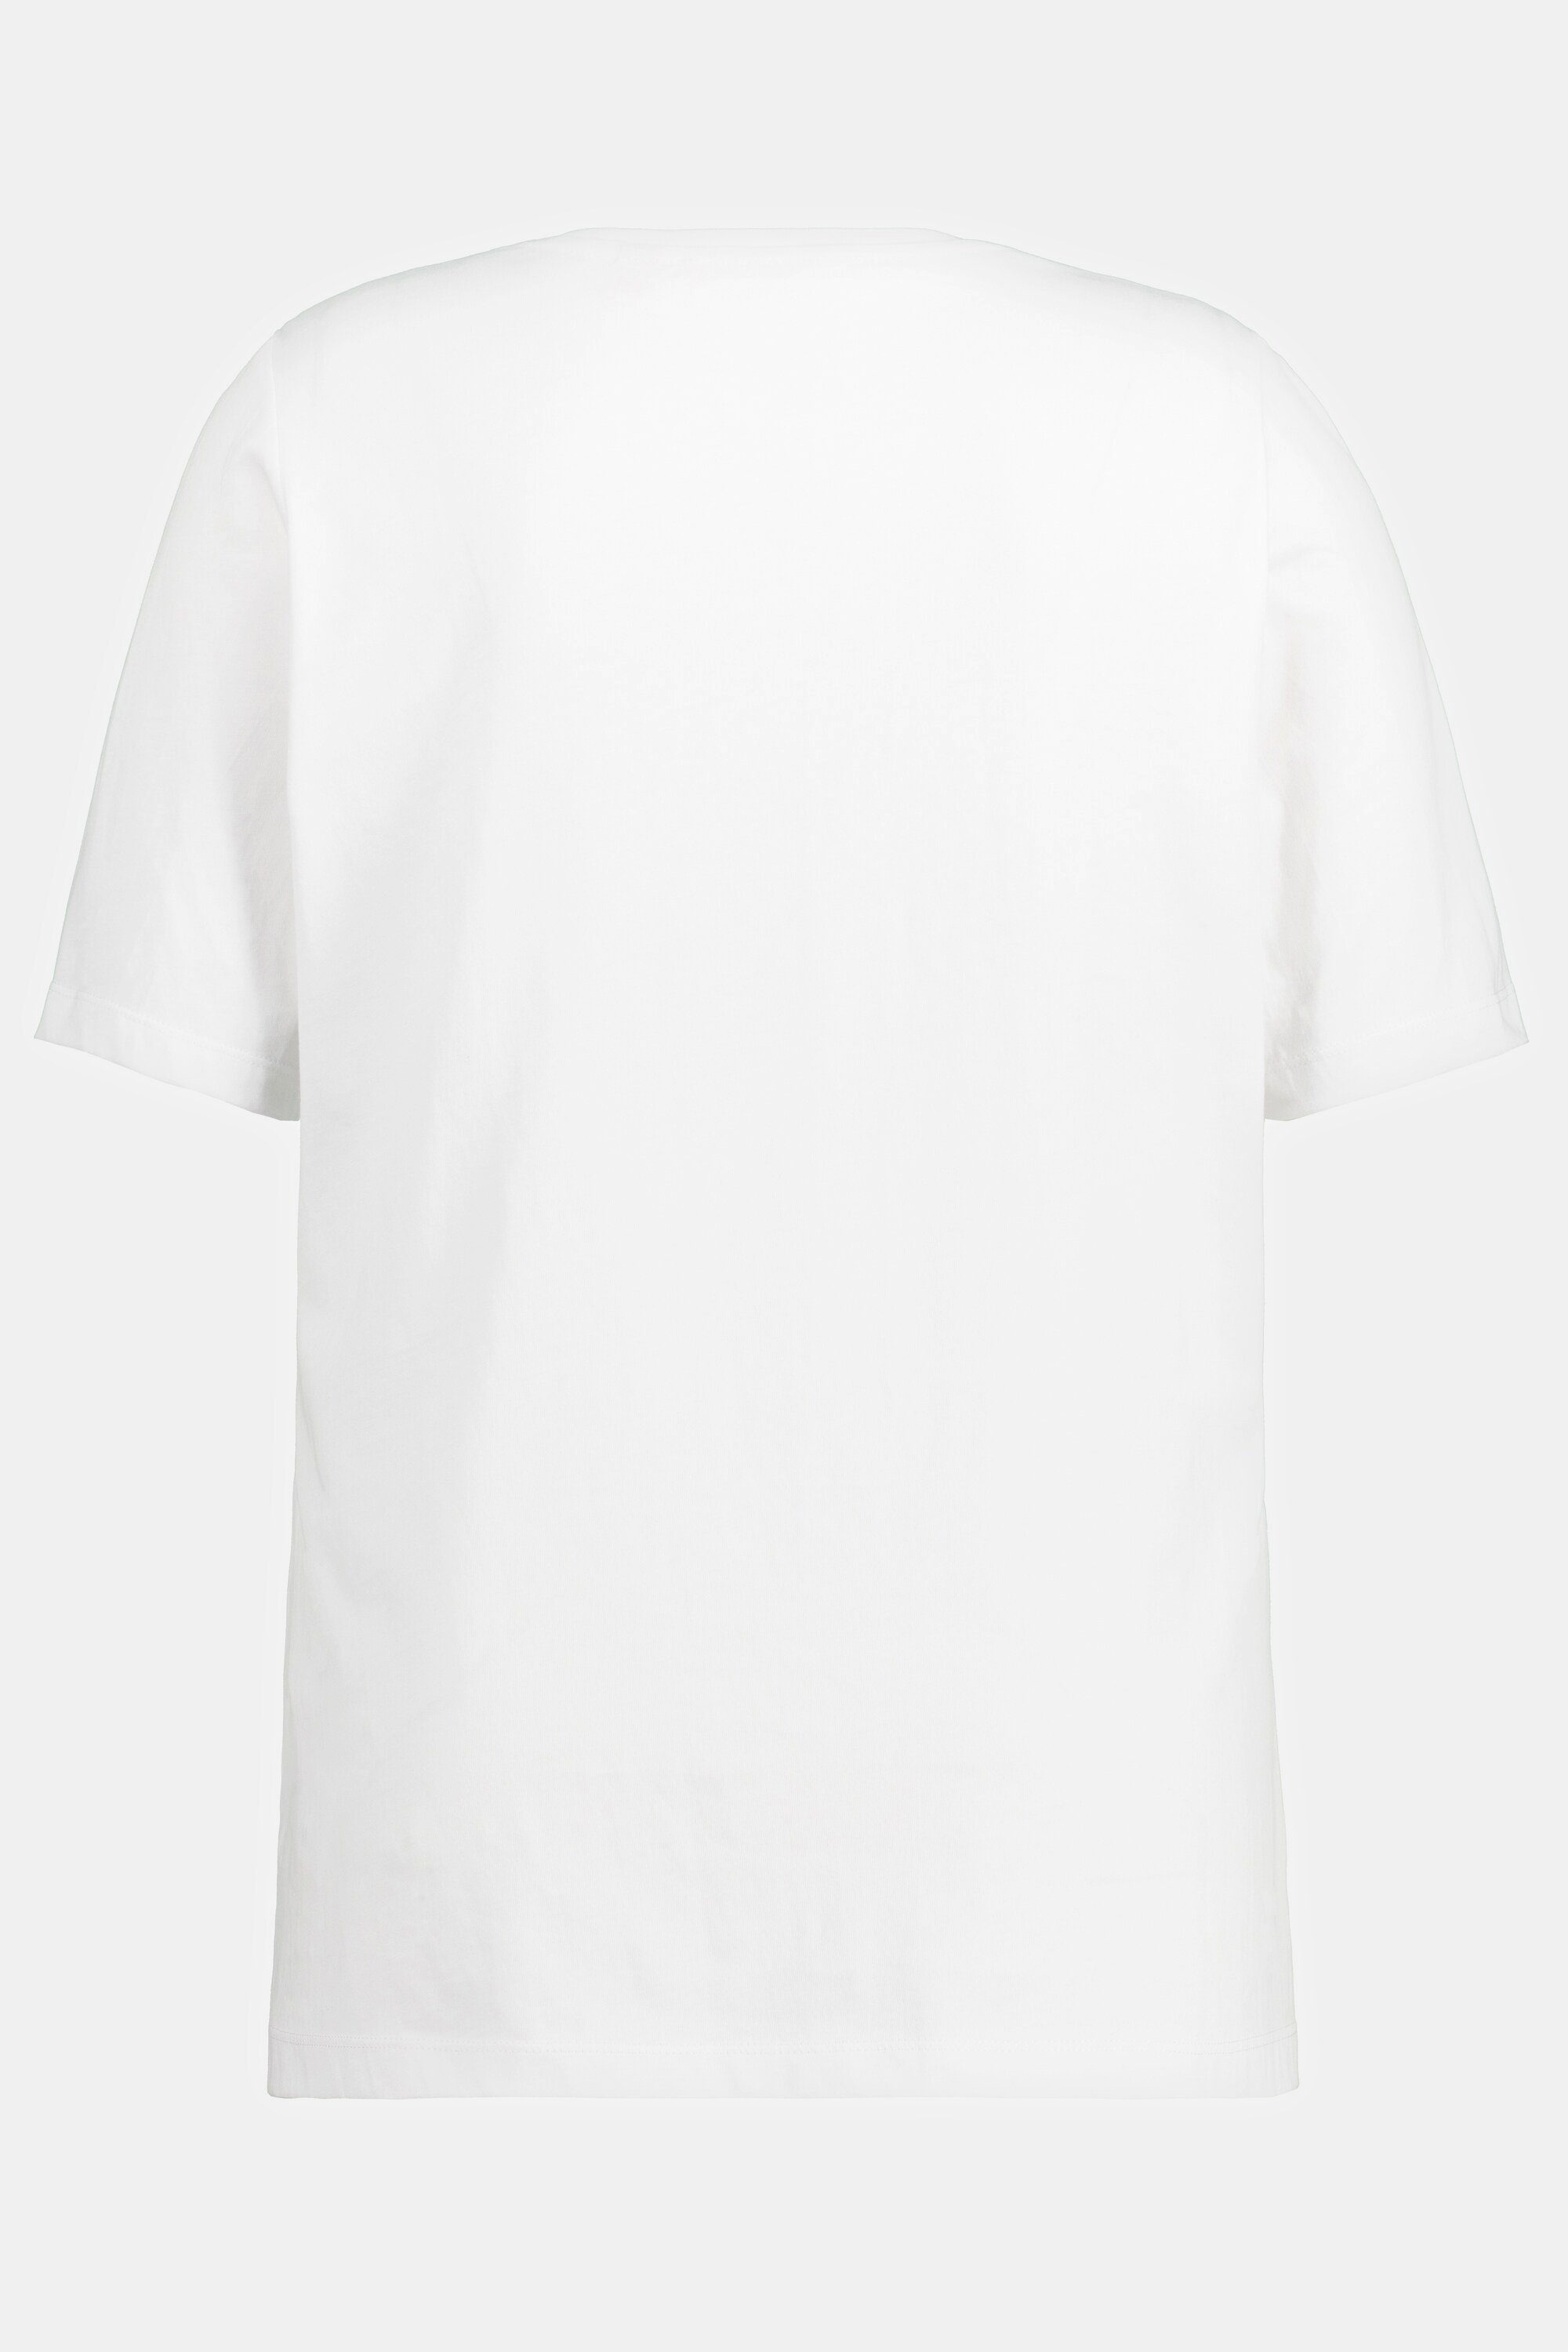 Biobaumwolle Rundhals Rundhalsshirt Halbarm offwhite Popken T-Shirt Ulla bedruckt